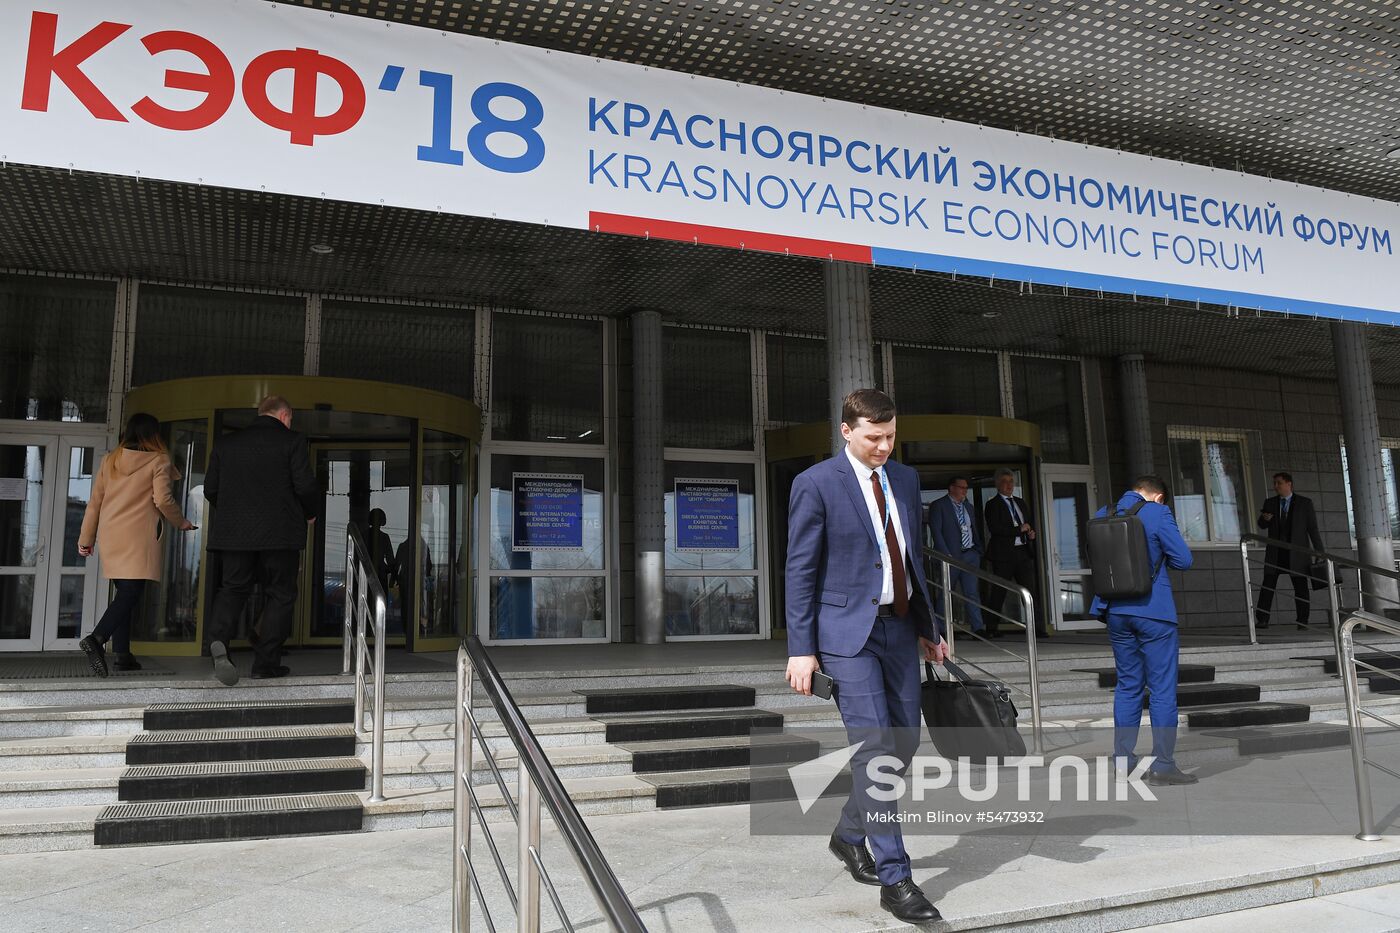 Krasnoyarsk Economic Forum. Day one